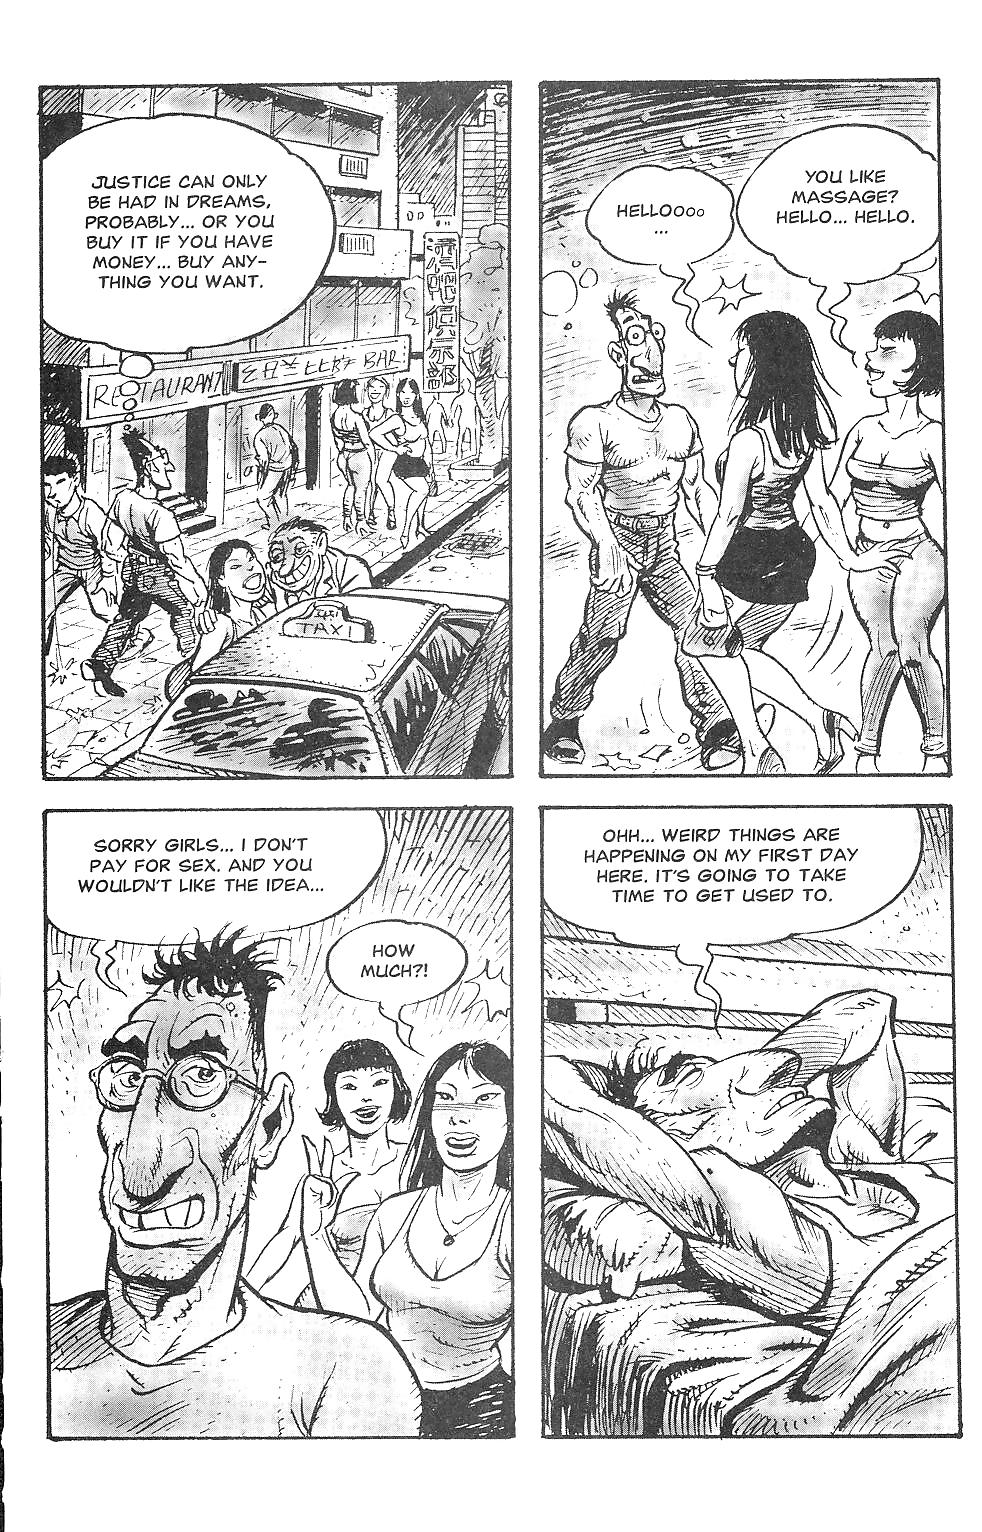 Orientierungen Sexuelle Belästigung Comics #17273246